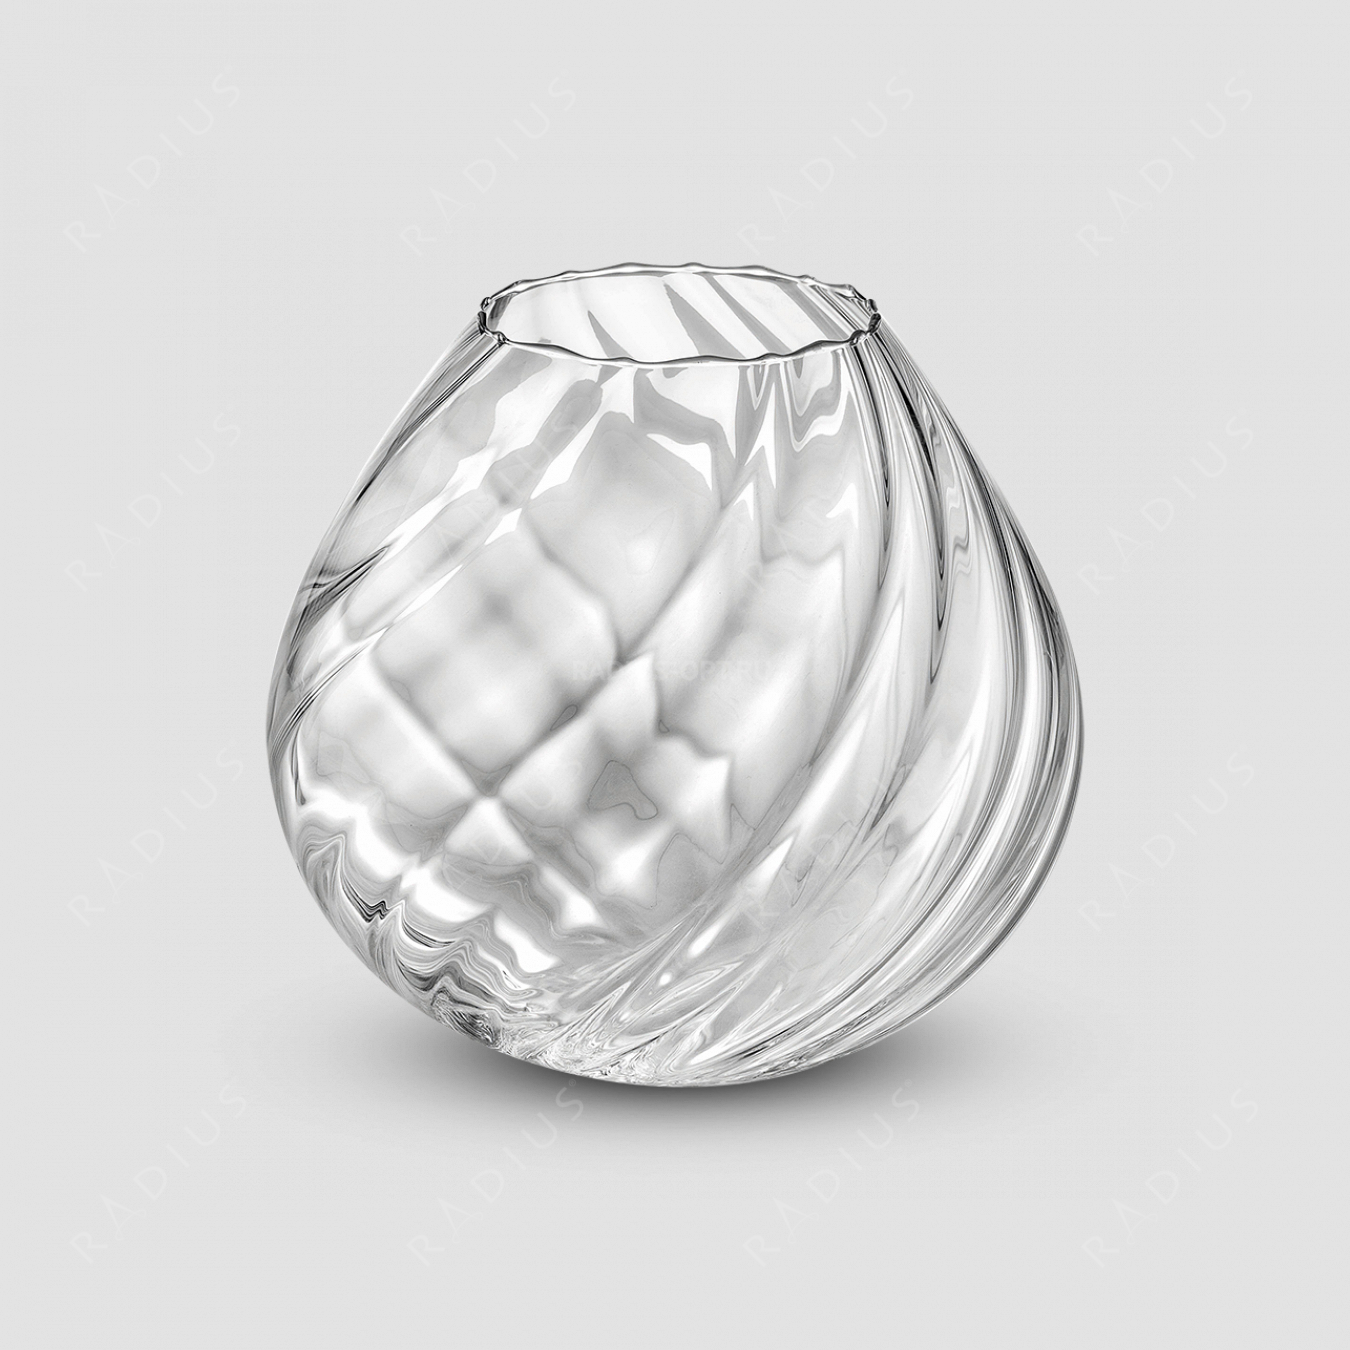 Стеклянная ваза для цветов, высота: 26 см, материал: стекло, серия Nuvola, IVV (Italy), Италия